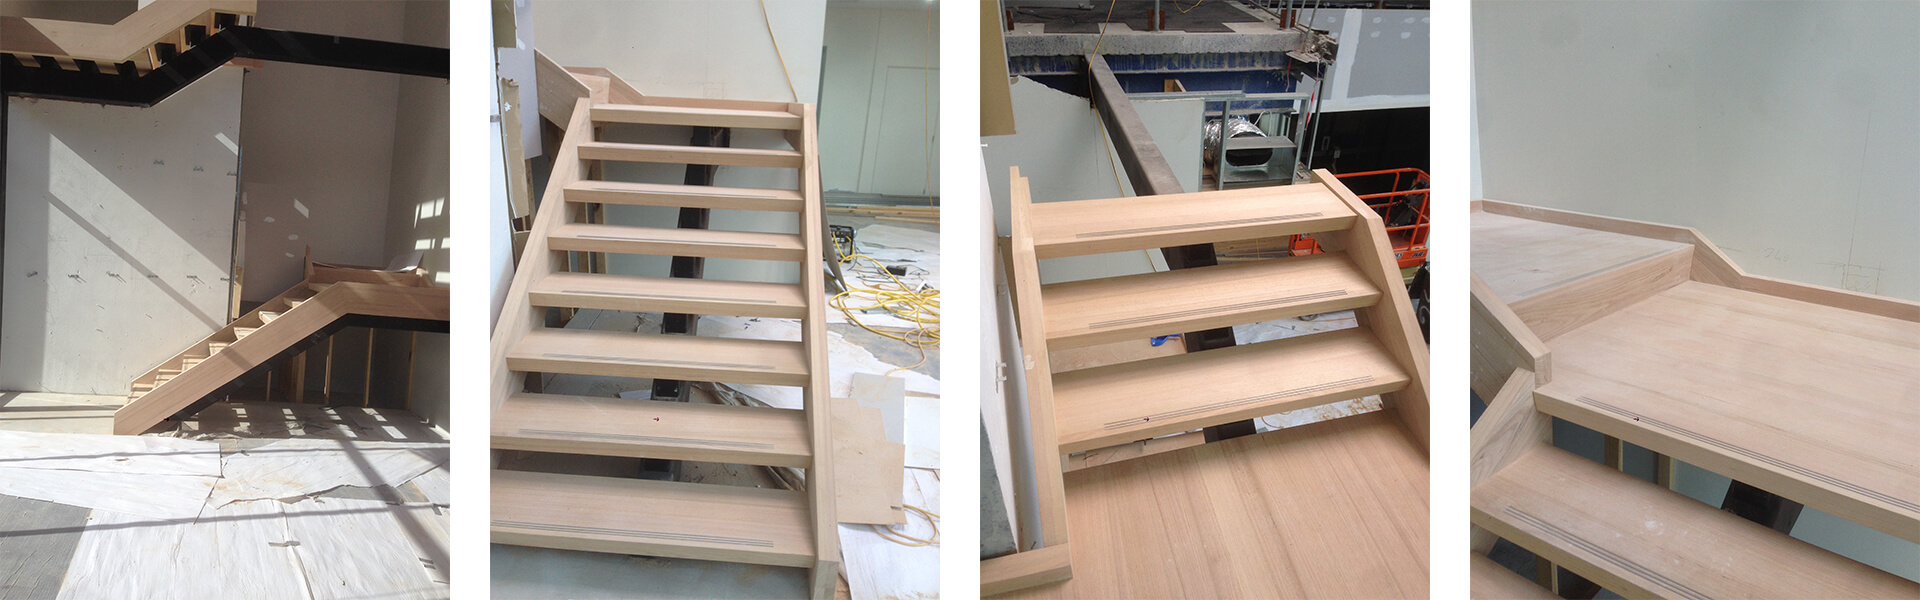 schody metalowe zabiegowe wewnętrzne z drewnianymi stopniami, wanga centralna